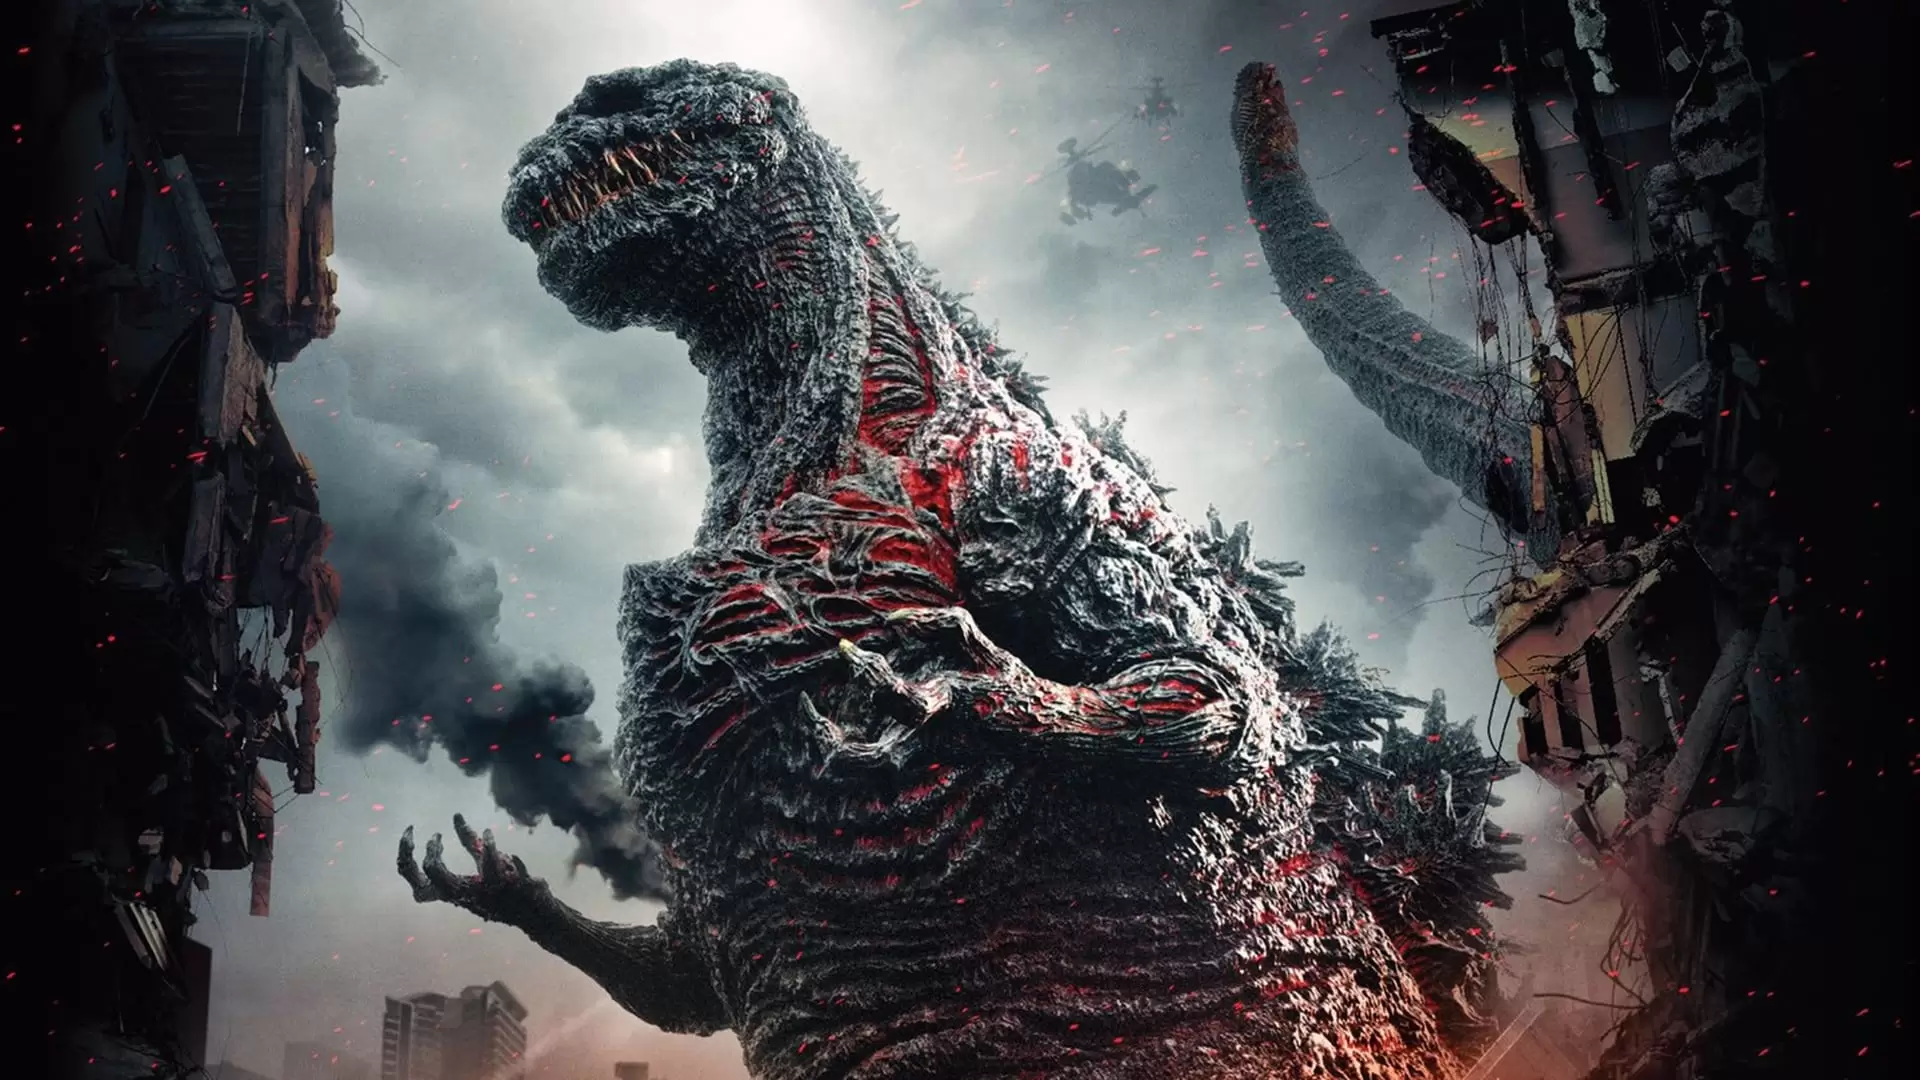 دانلود فیلم Shin Godzilla 2016 (بازخیز گودزیلا) با زیرنویس فارسی